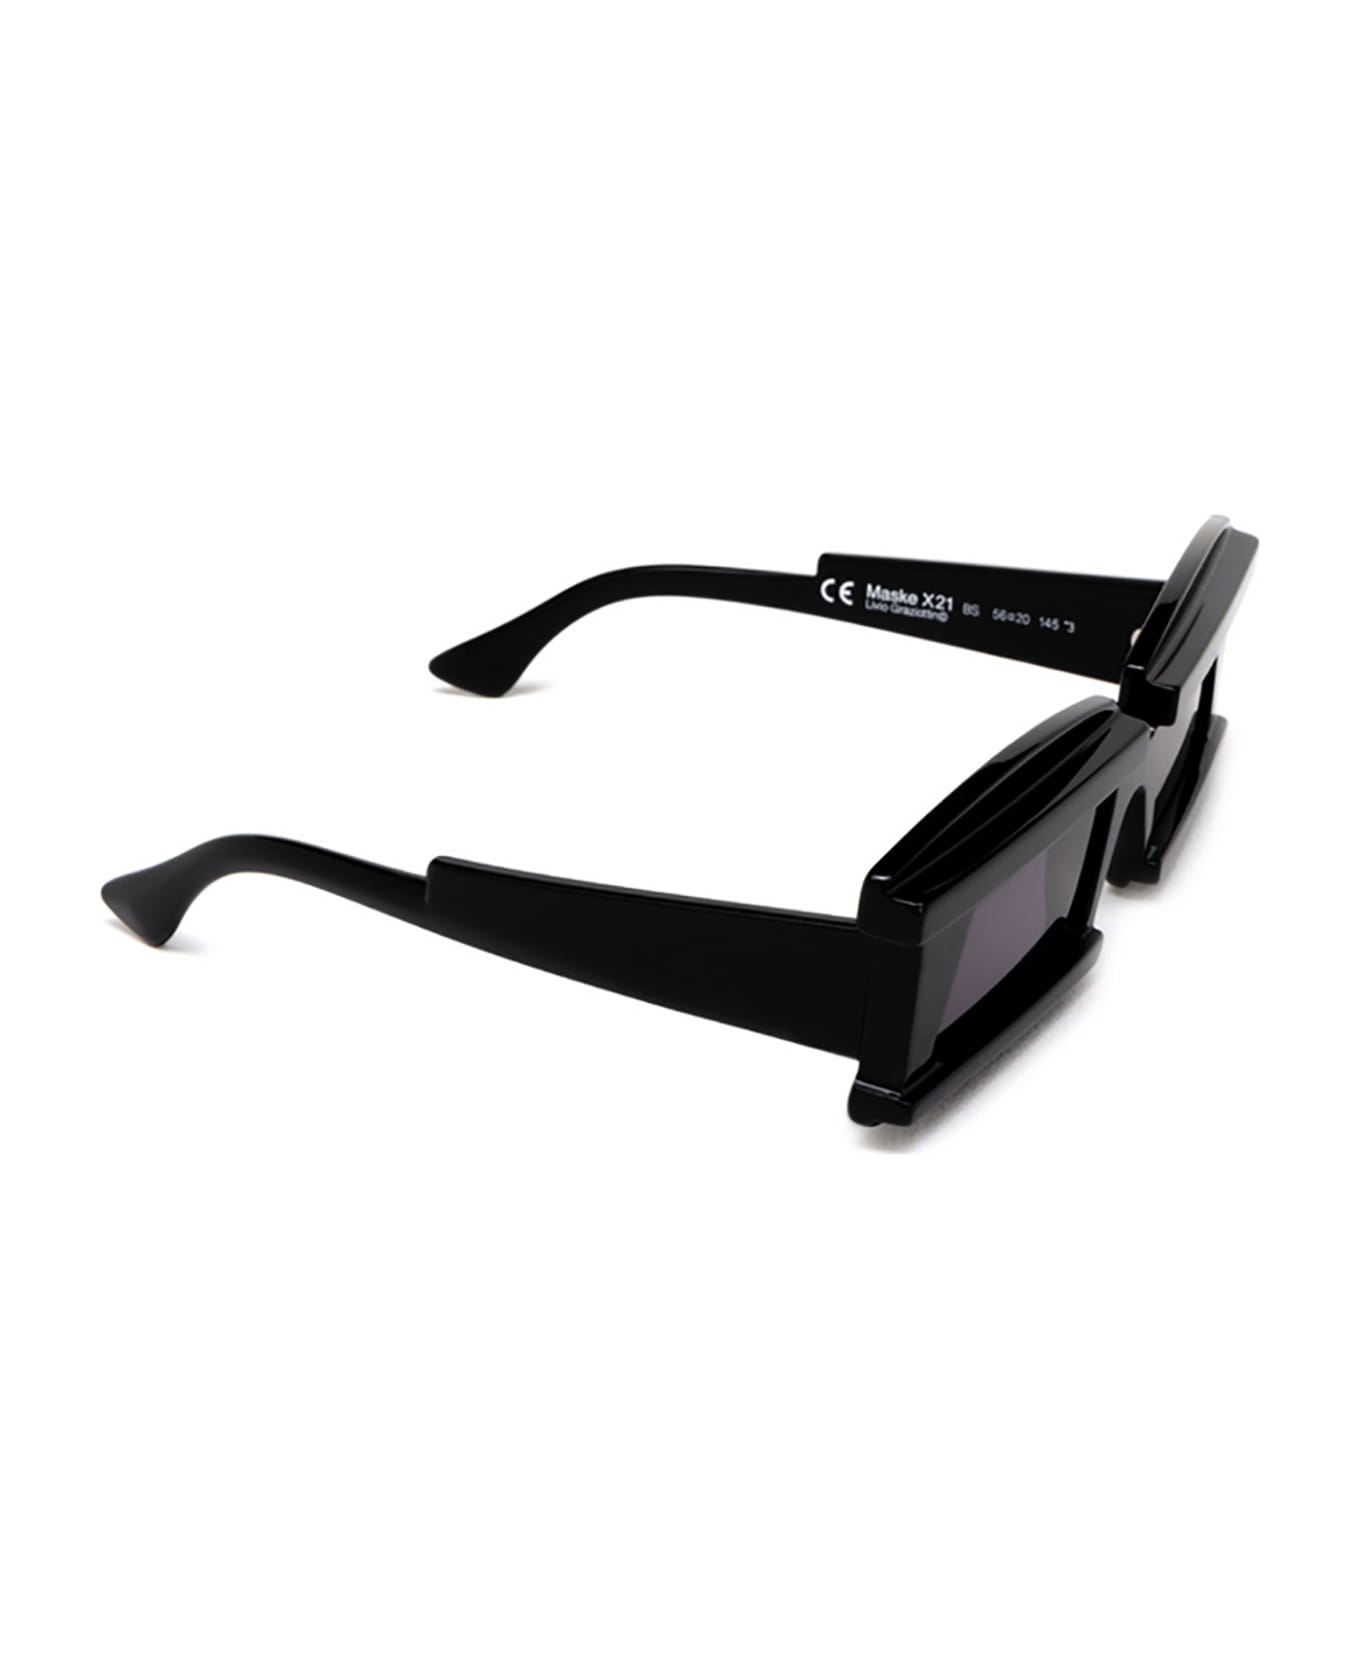 Kuboraum X21 Sunglasses - Bs サングラス